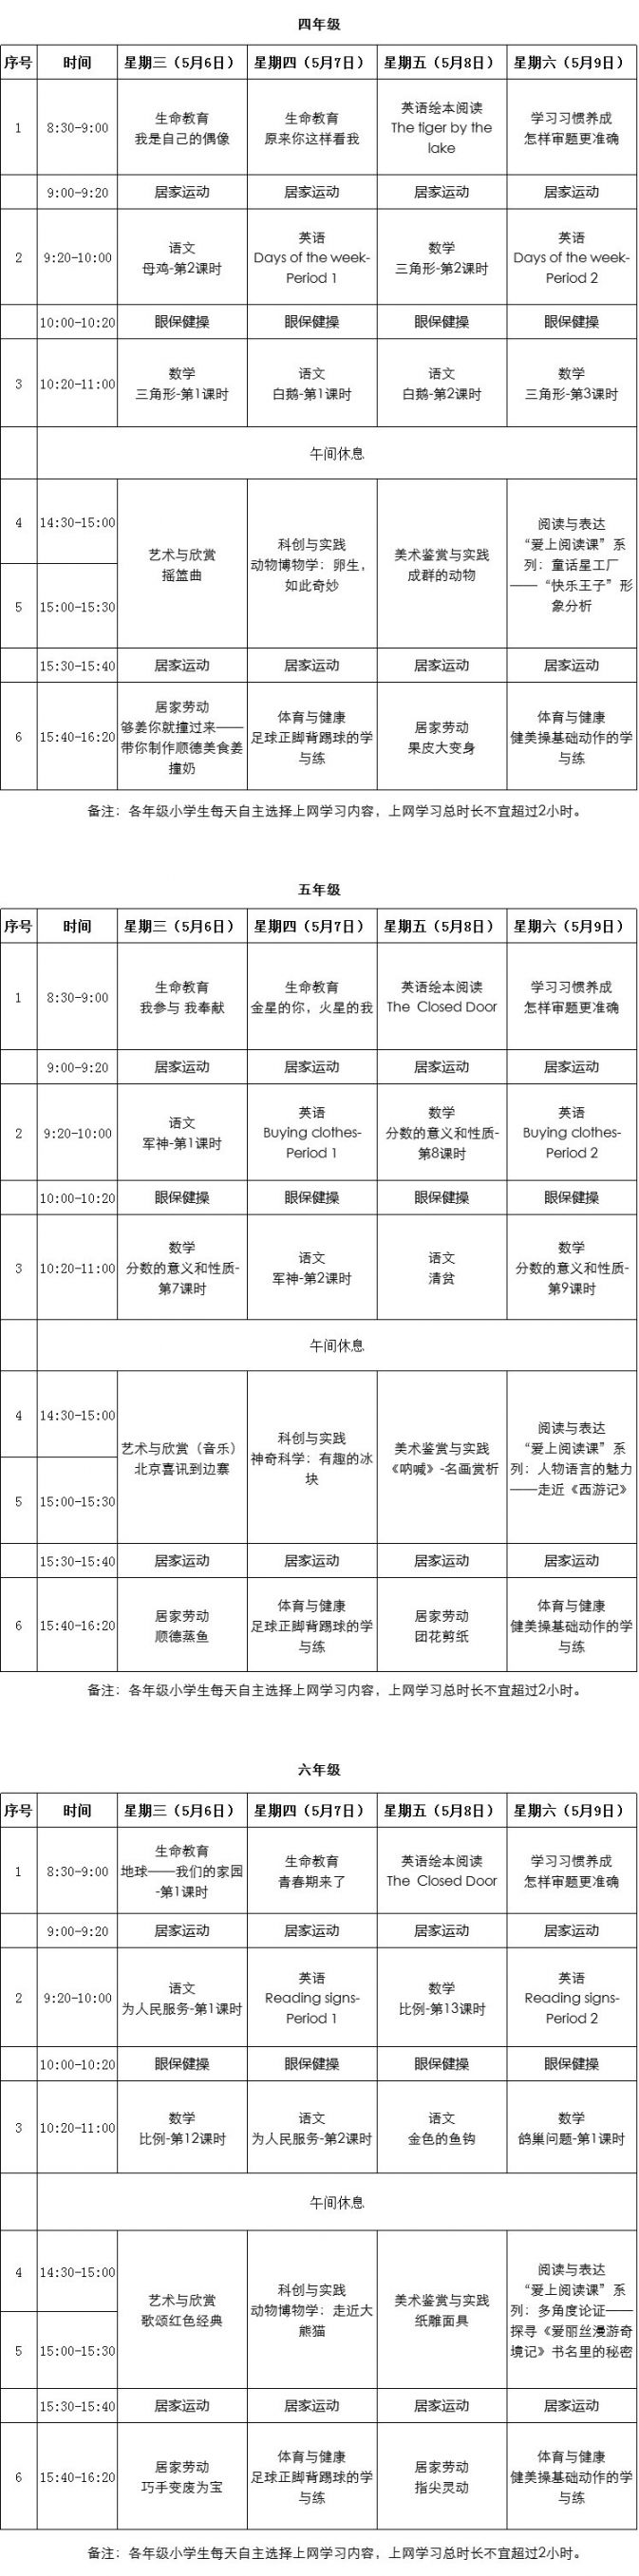 2020粤课堂小学课程表(持续更新)